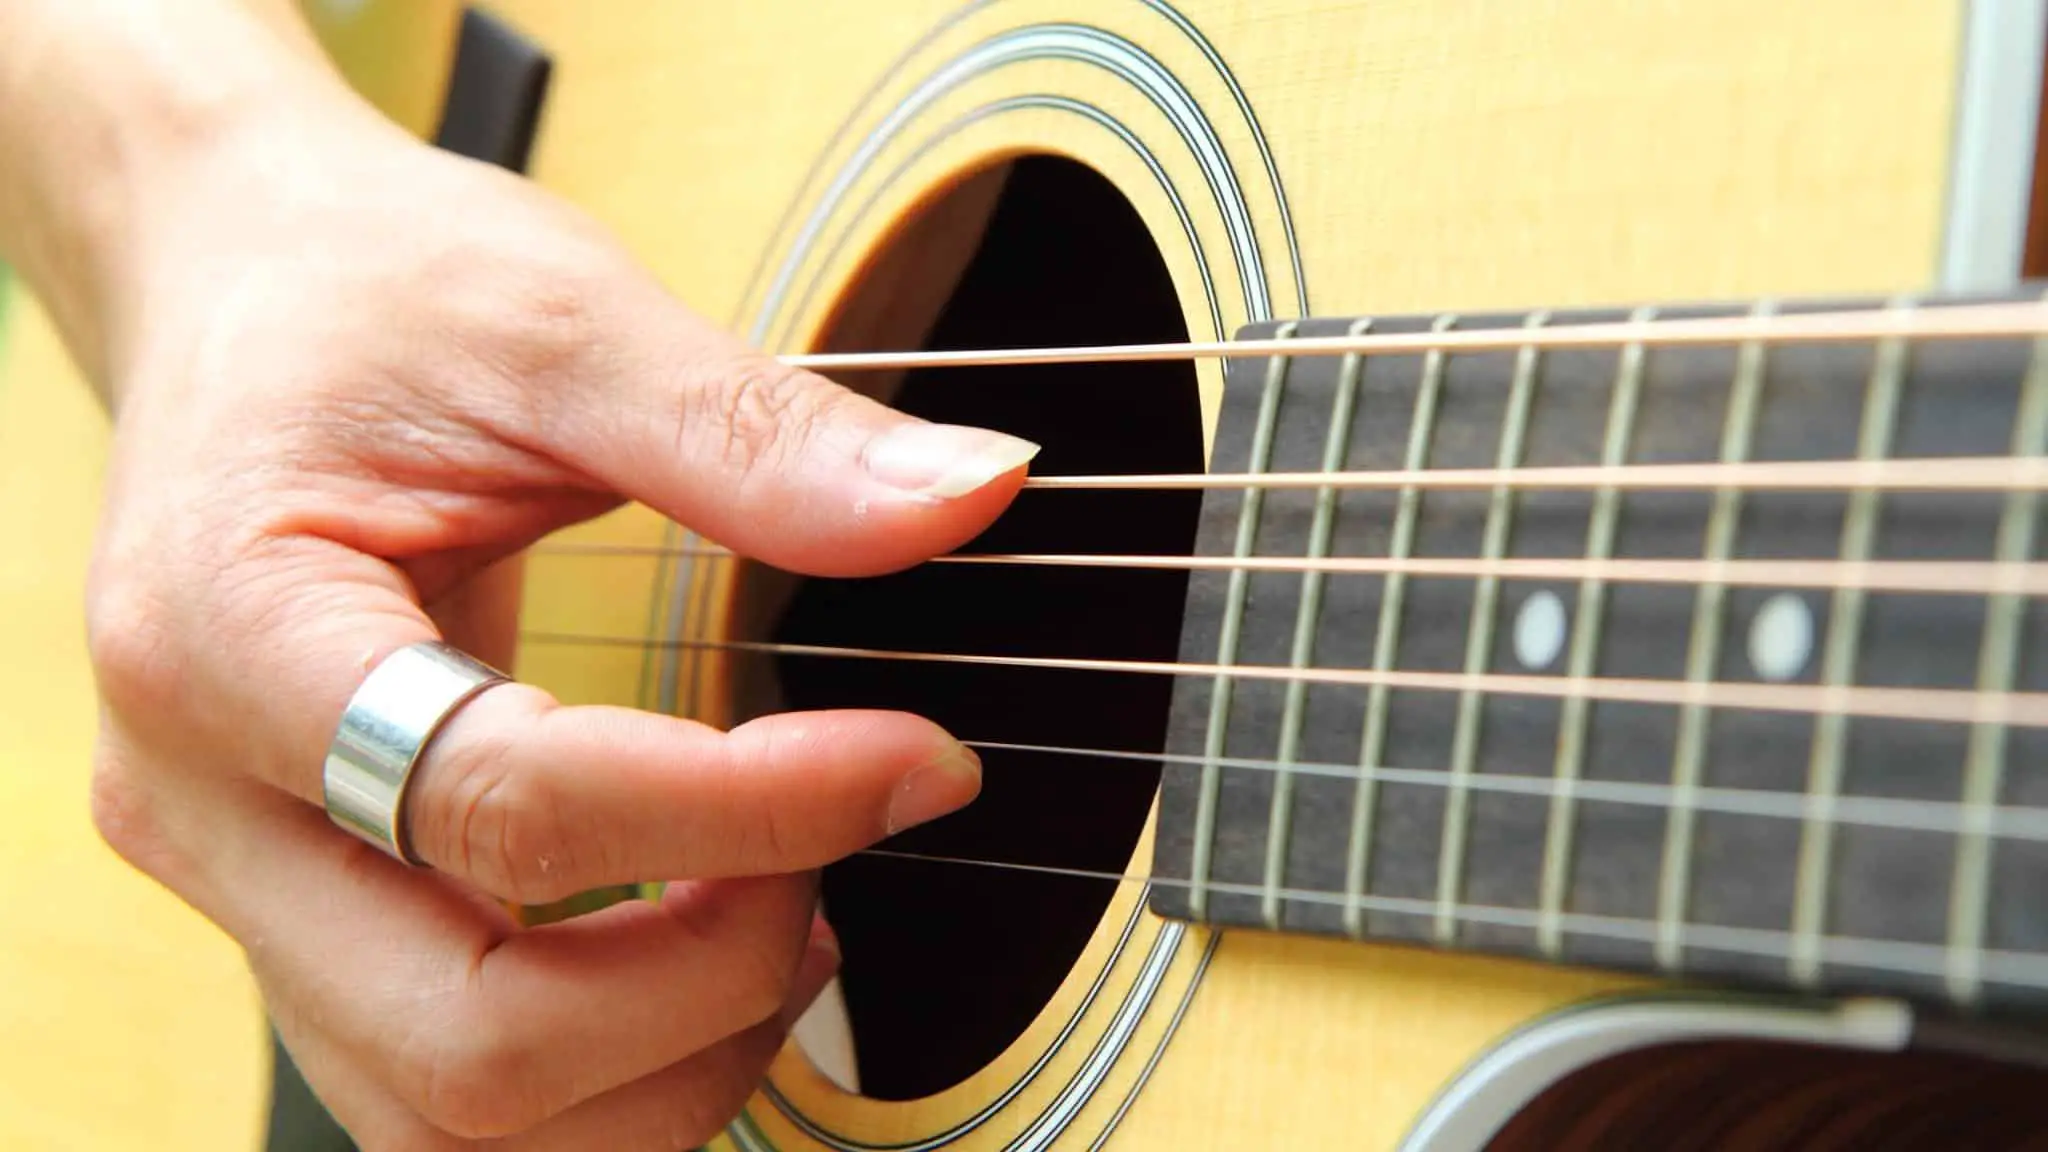 fingerpicking a guitar